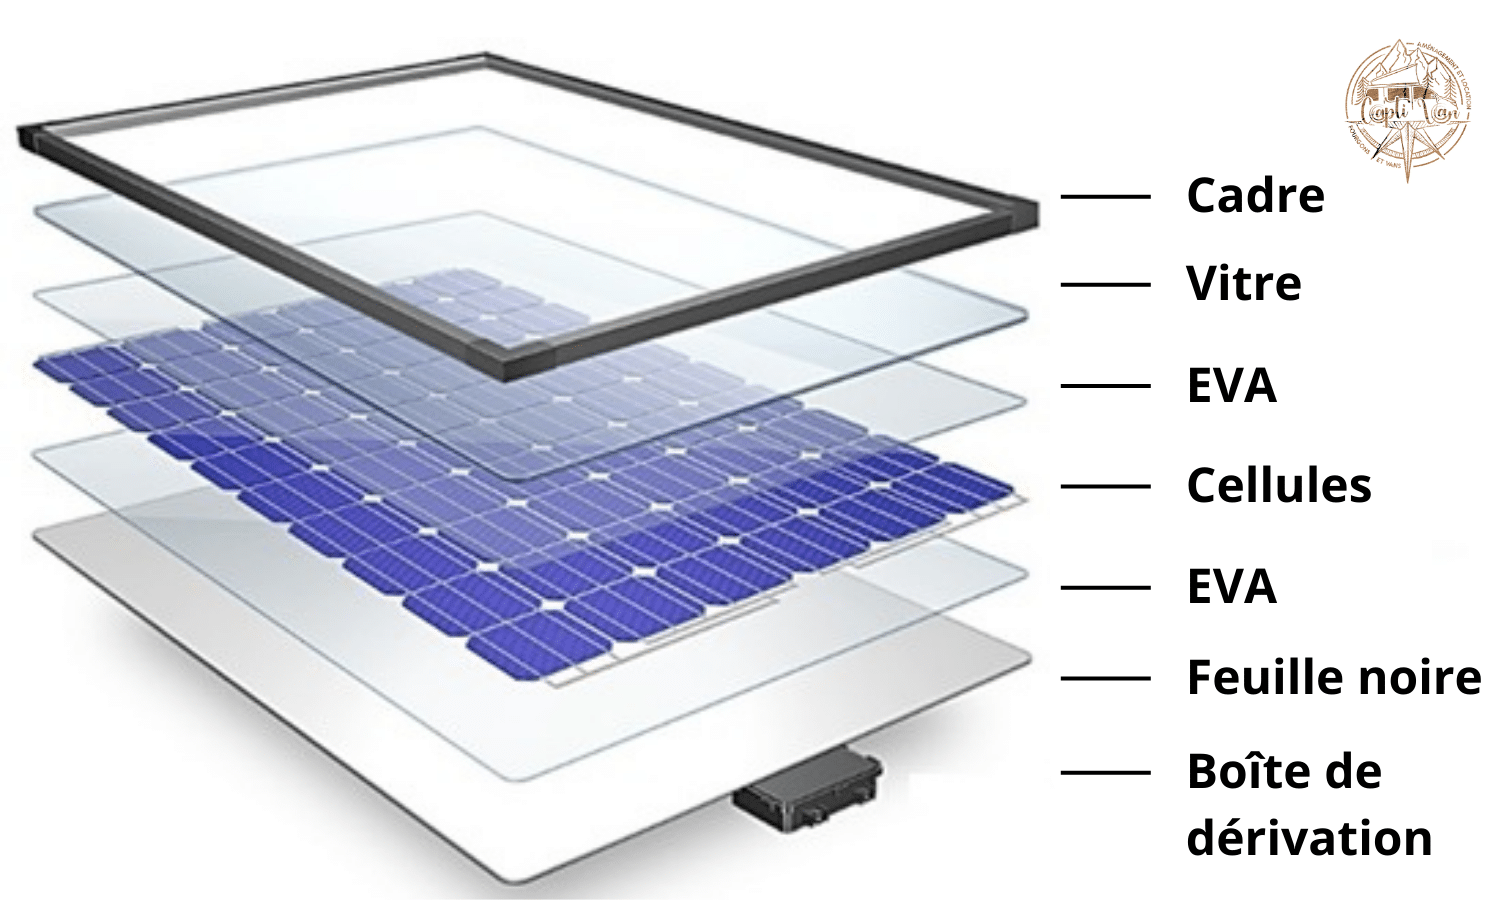 Schema explicatif de la technologie EVA présente dans les panneaux solaires BlueSolar